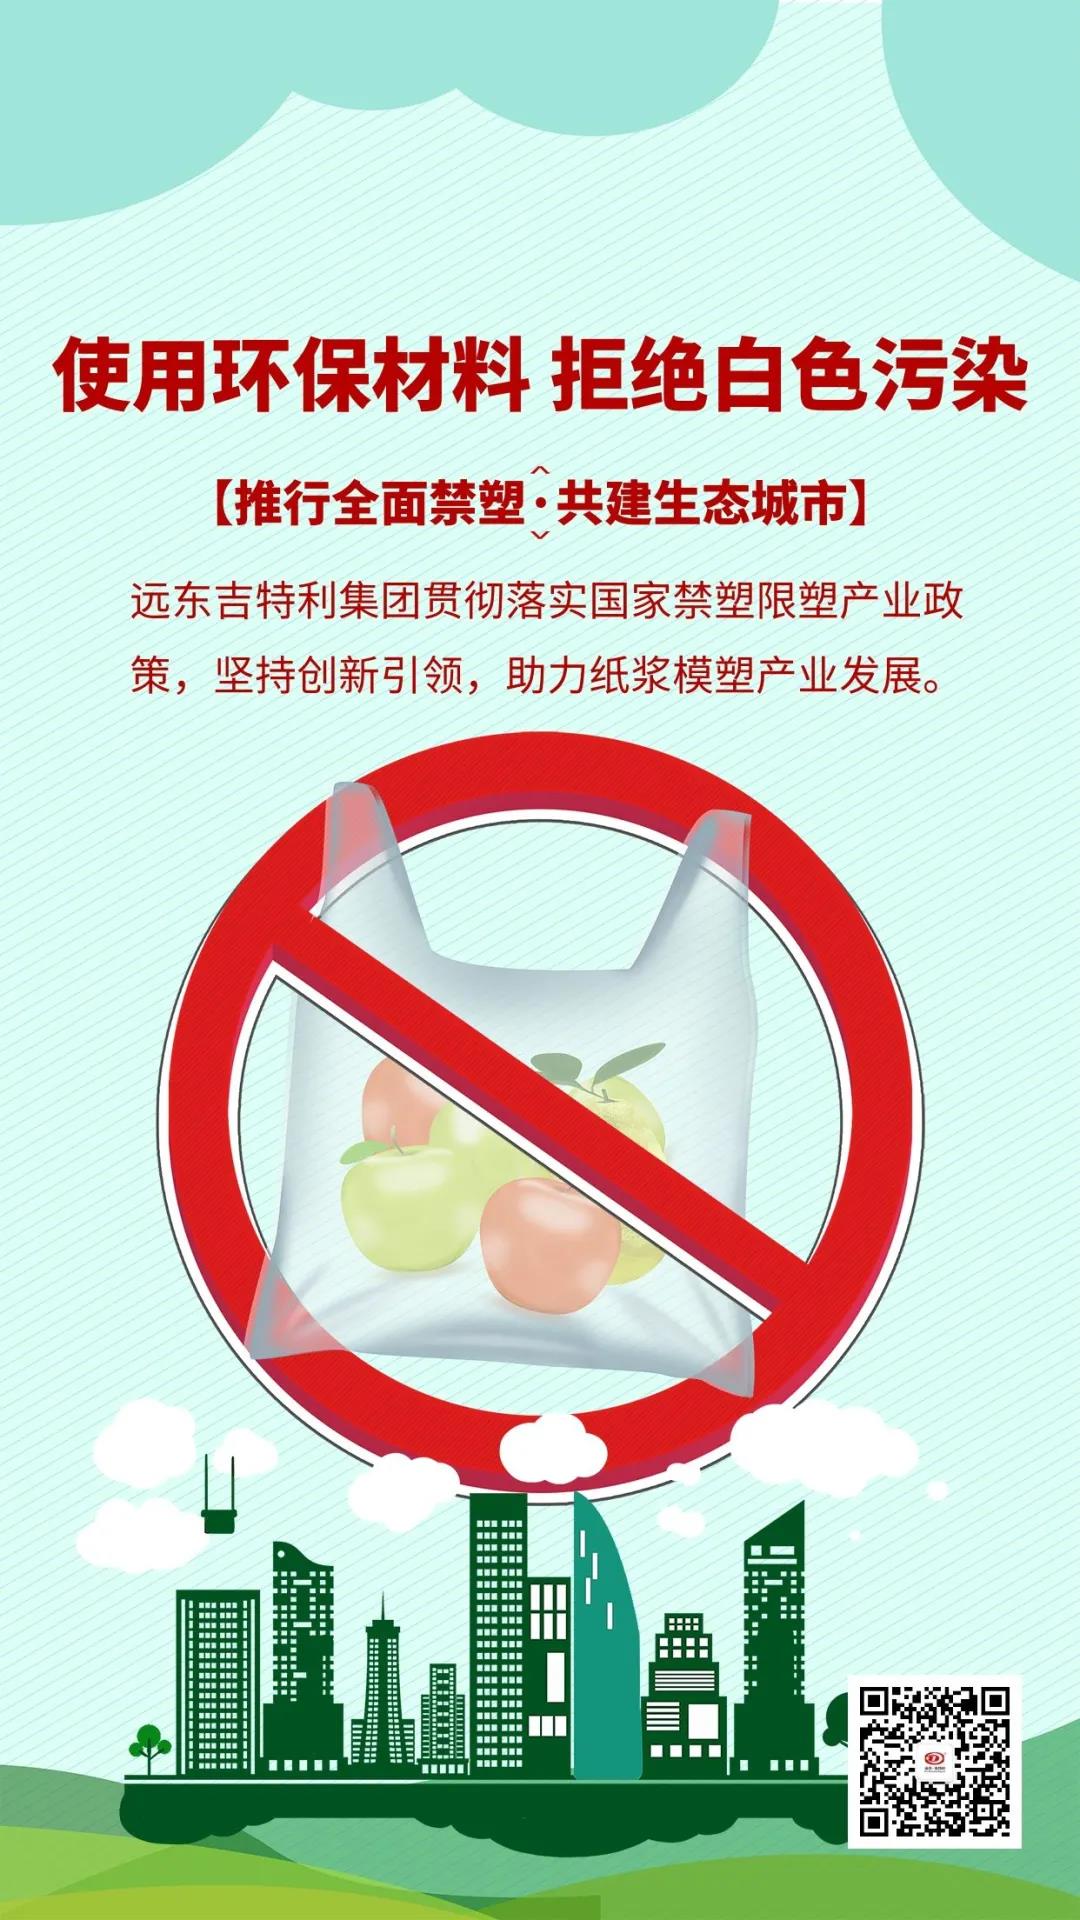 Prijedlog za zabranu ambalaže za plastiku, zagovaranje biorazgradivog pakiranja od pulpe šećerne trske!